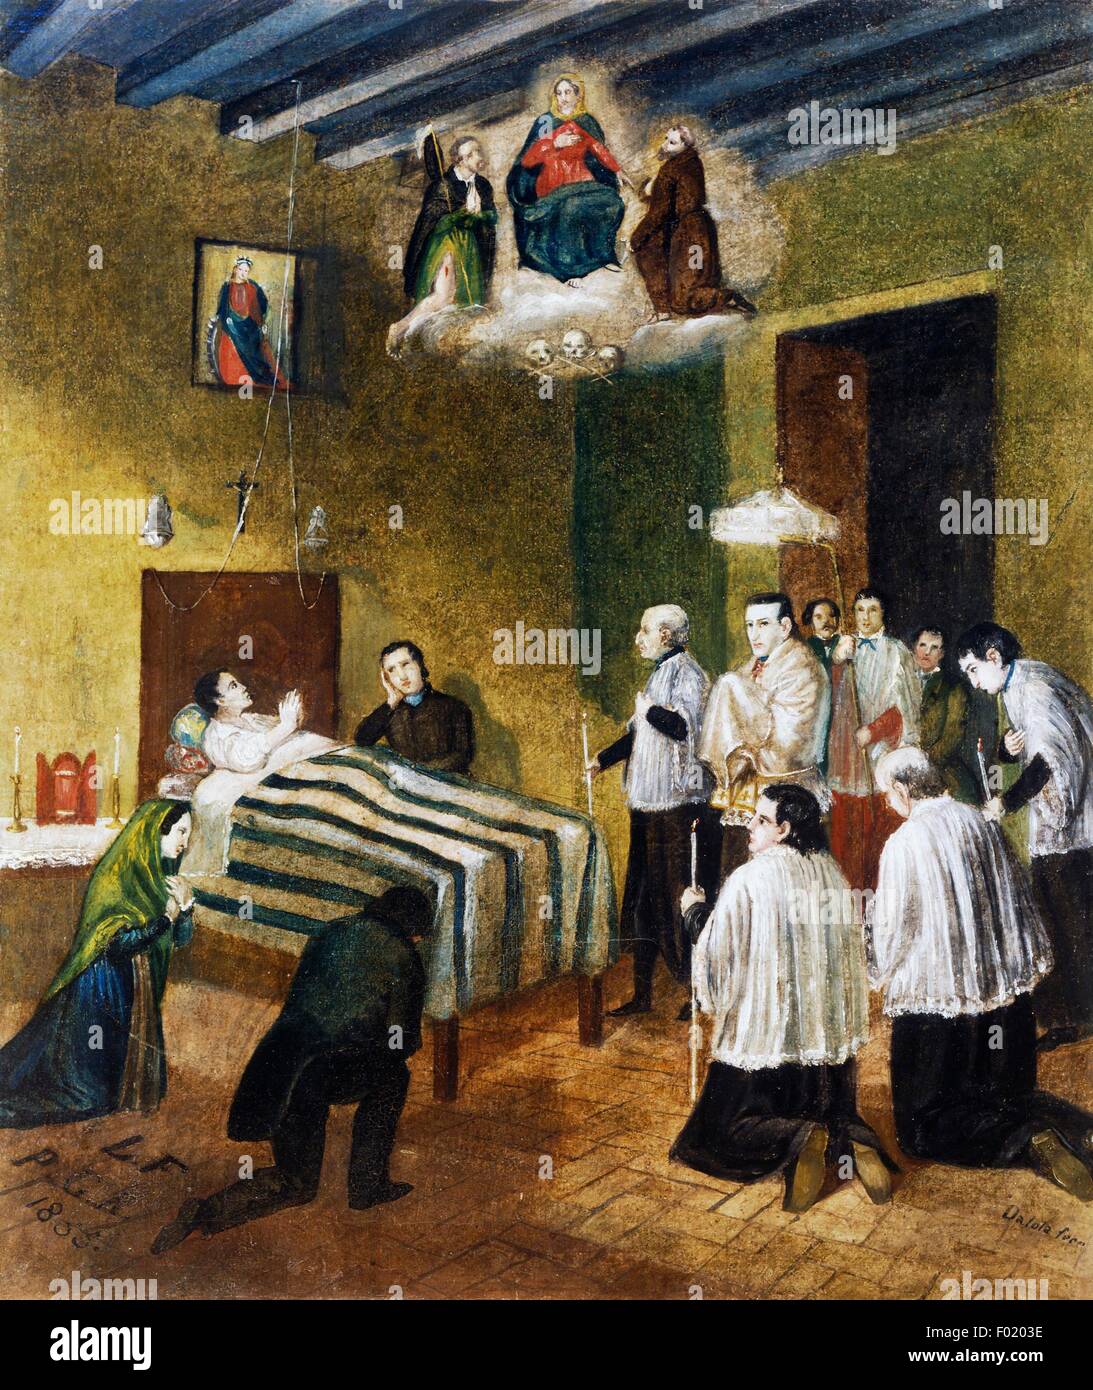 Homme malade entouré par des parents et des prêtres, ex voto, Italie, 19e siècle. Banque D'Images